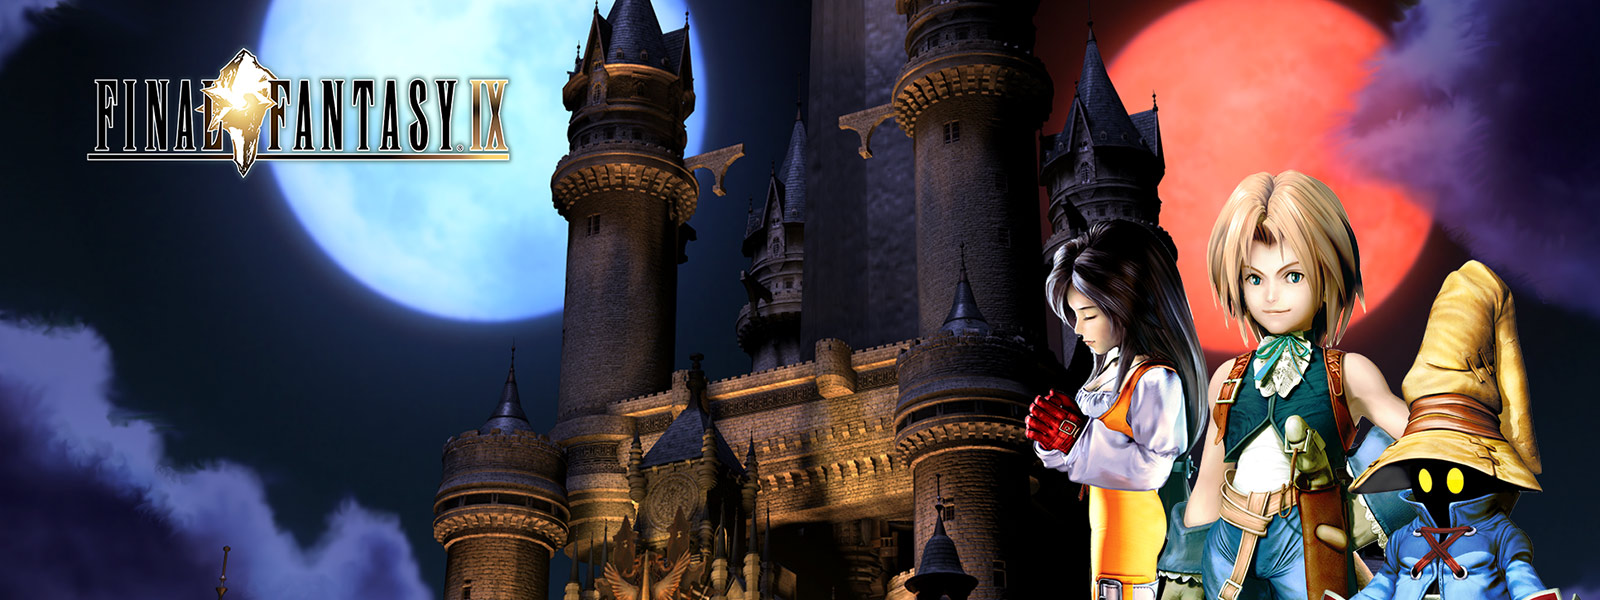 最终幻想 IX 的角色 Garnet Til Alexandros XVII、Zidane Tribal 和 Vivi Orunitia 站在城堡前